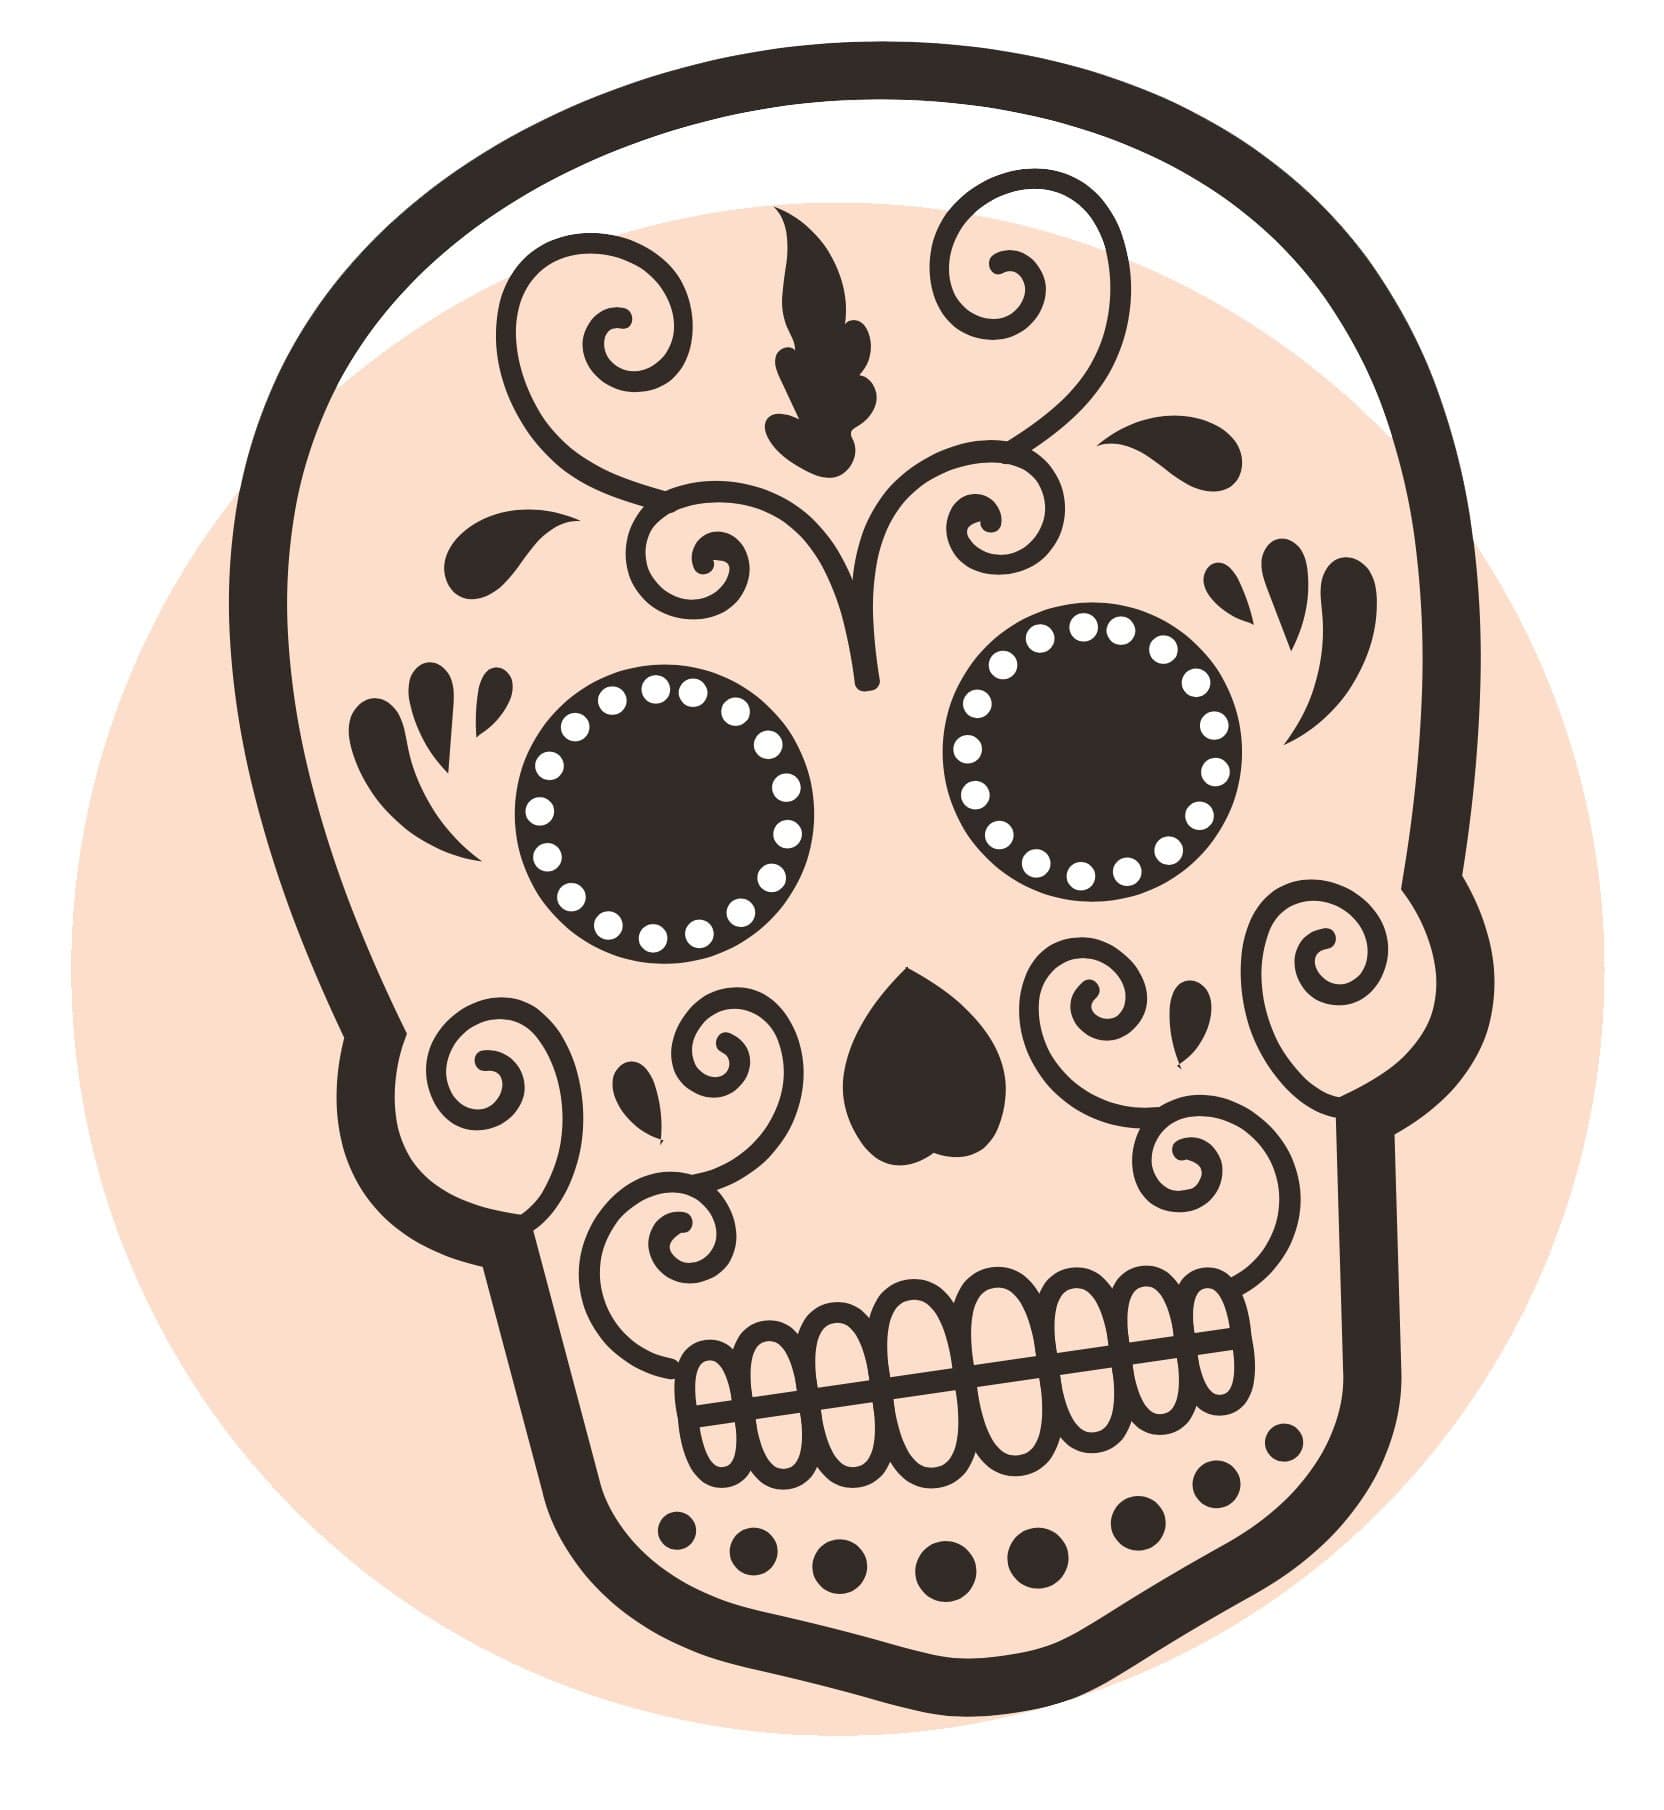 Illustration of a Cavalera "Painted" skull (sometimes called a sugar skull)